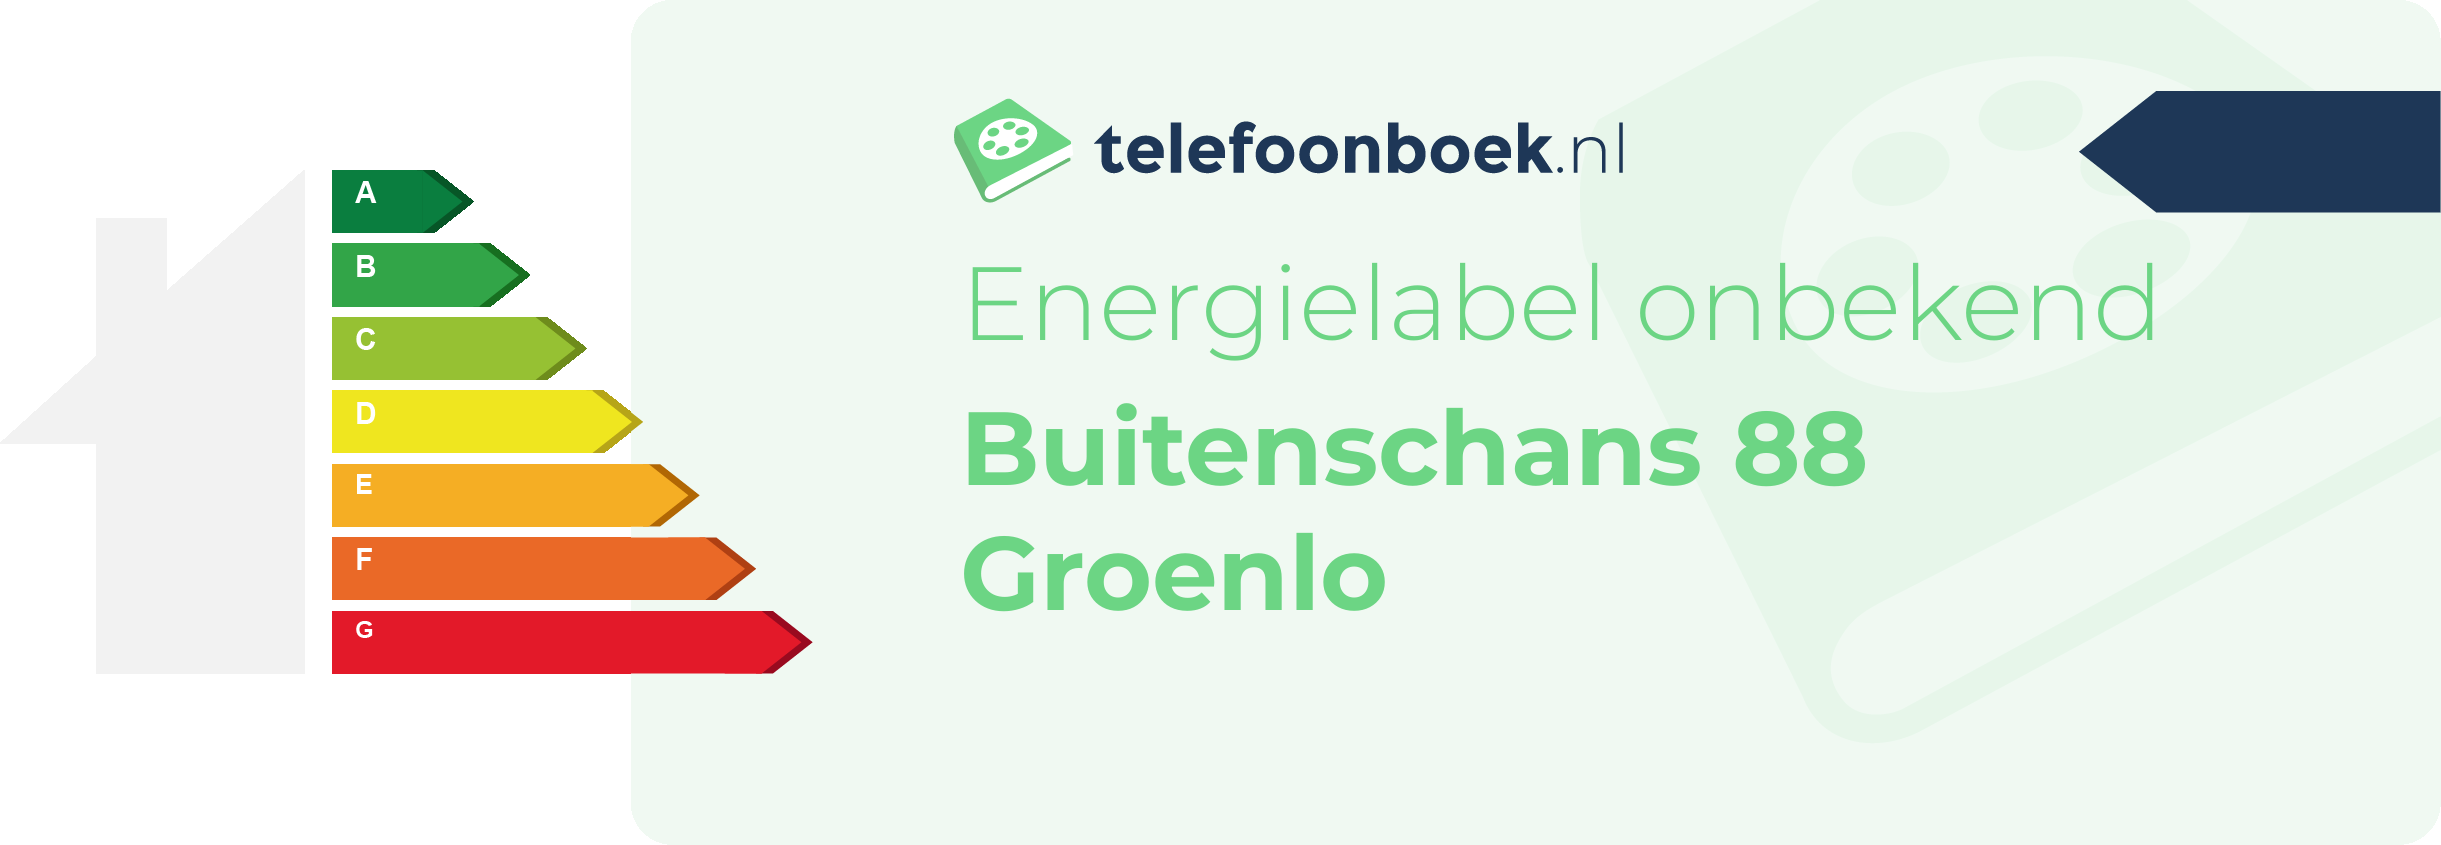 Energielabel Buitenschans 88 Groenlo